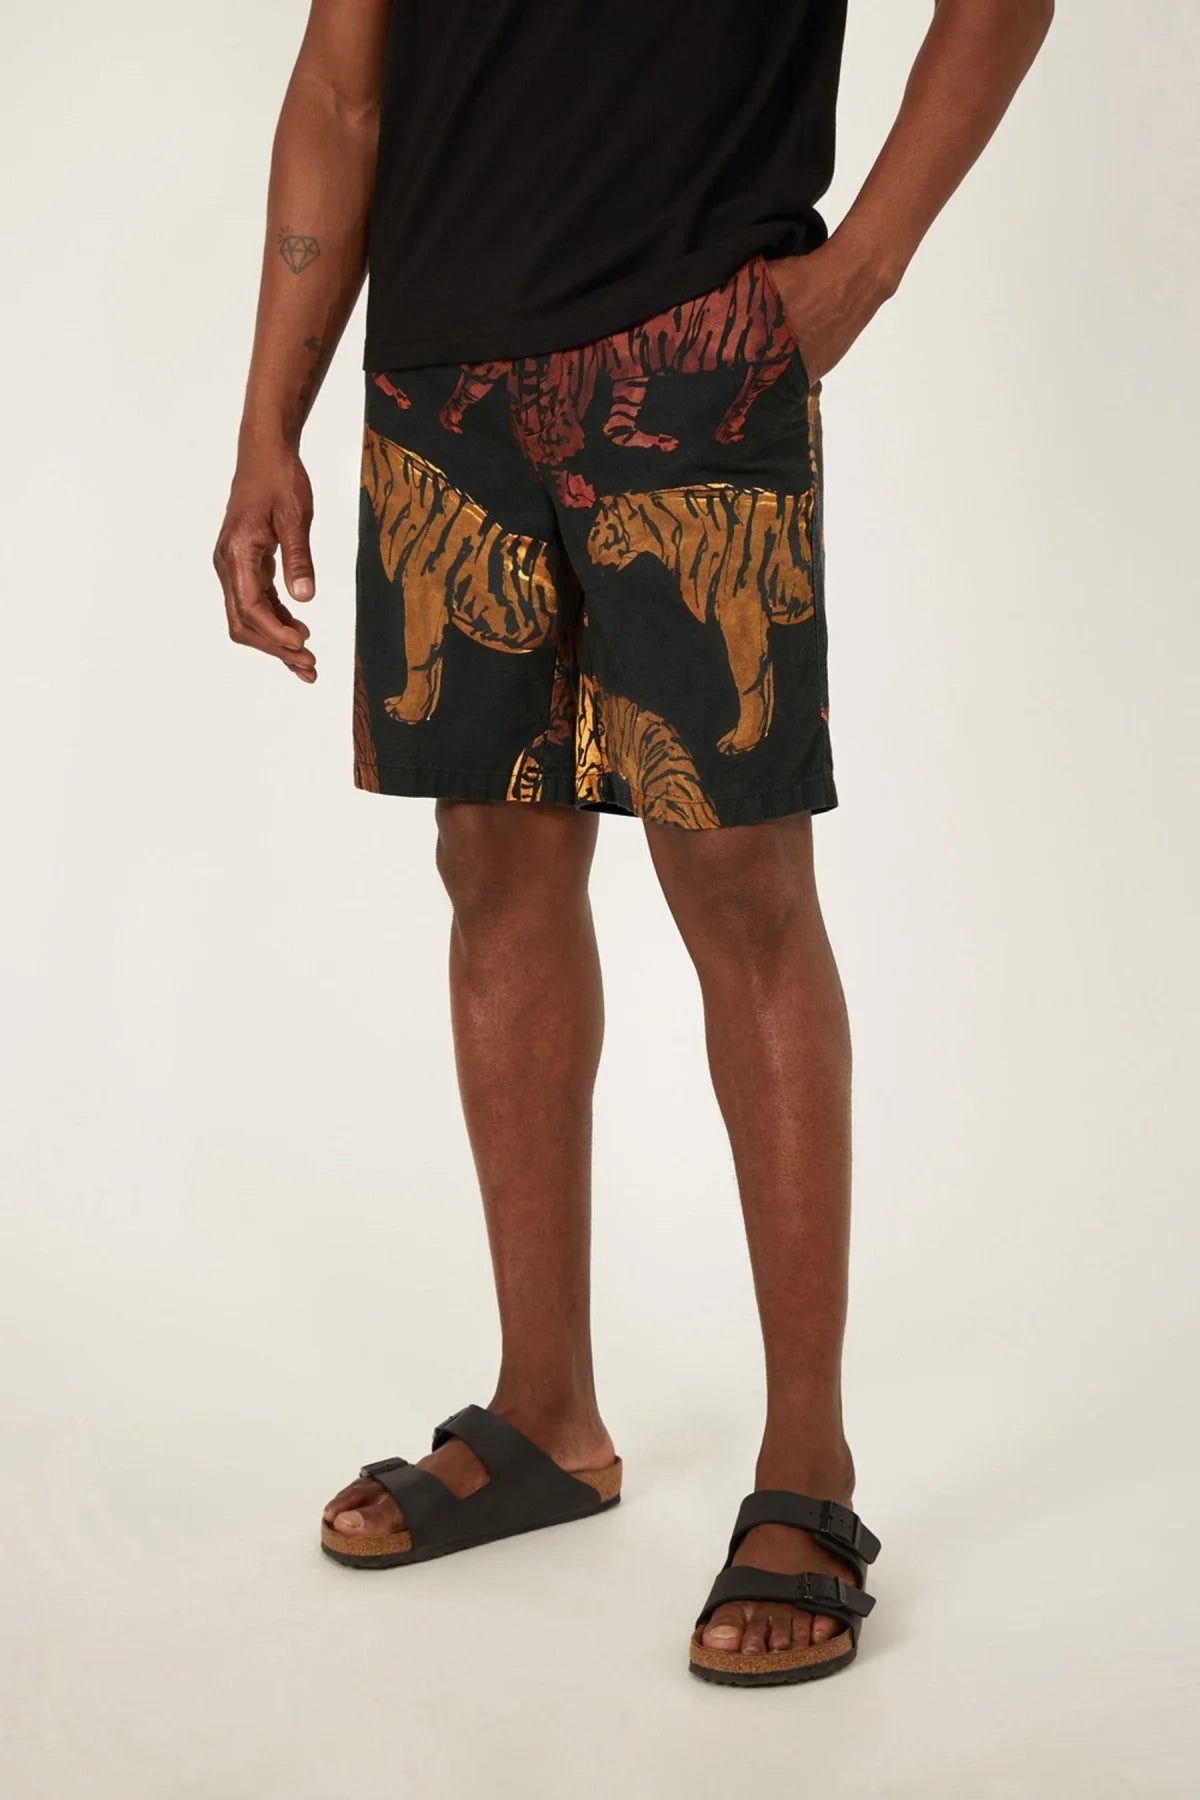 Warehouse Tiger Print Shorts Black/Brown / 30